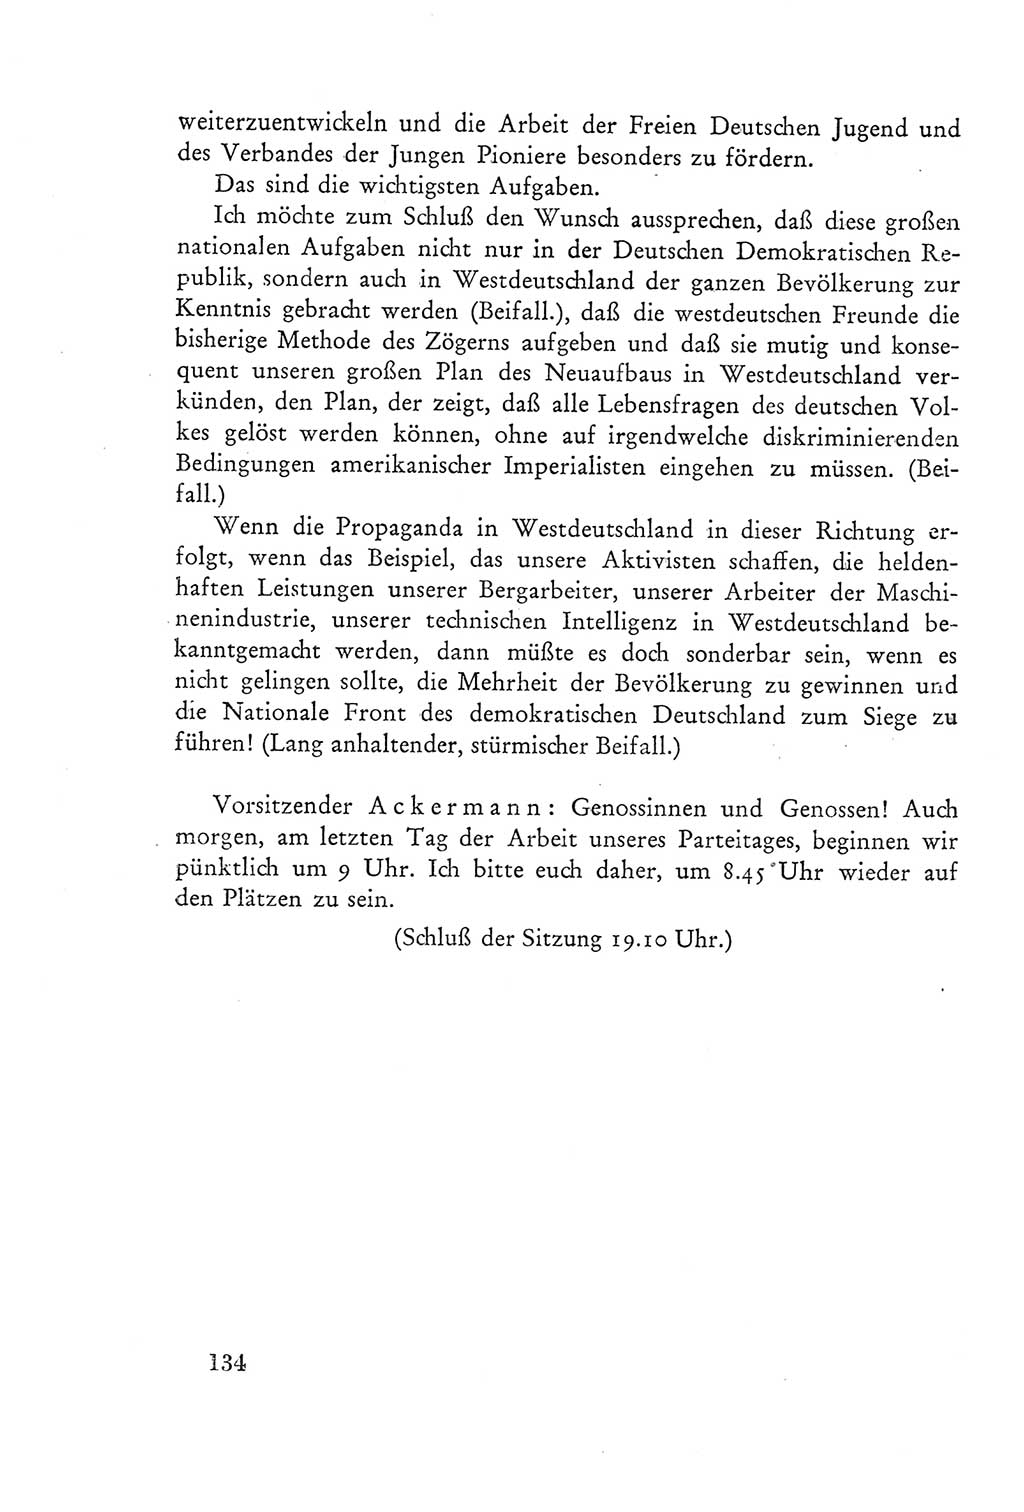 Protokoll der Verhandlungen des Ⅲ. Parteitages der Sozialistischen Einheitspartei Deutschlands (SED) [Deutsche Demokratische Republik (DDR)] 1950, Band 2, Seite 134 (Prot. Verh. Ⅲ. PT SED DDR 1950, Bd. 2, S. 134)